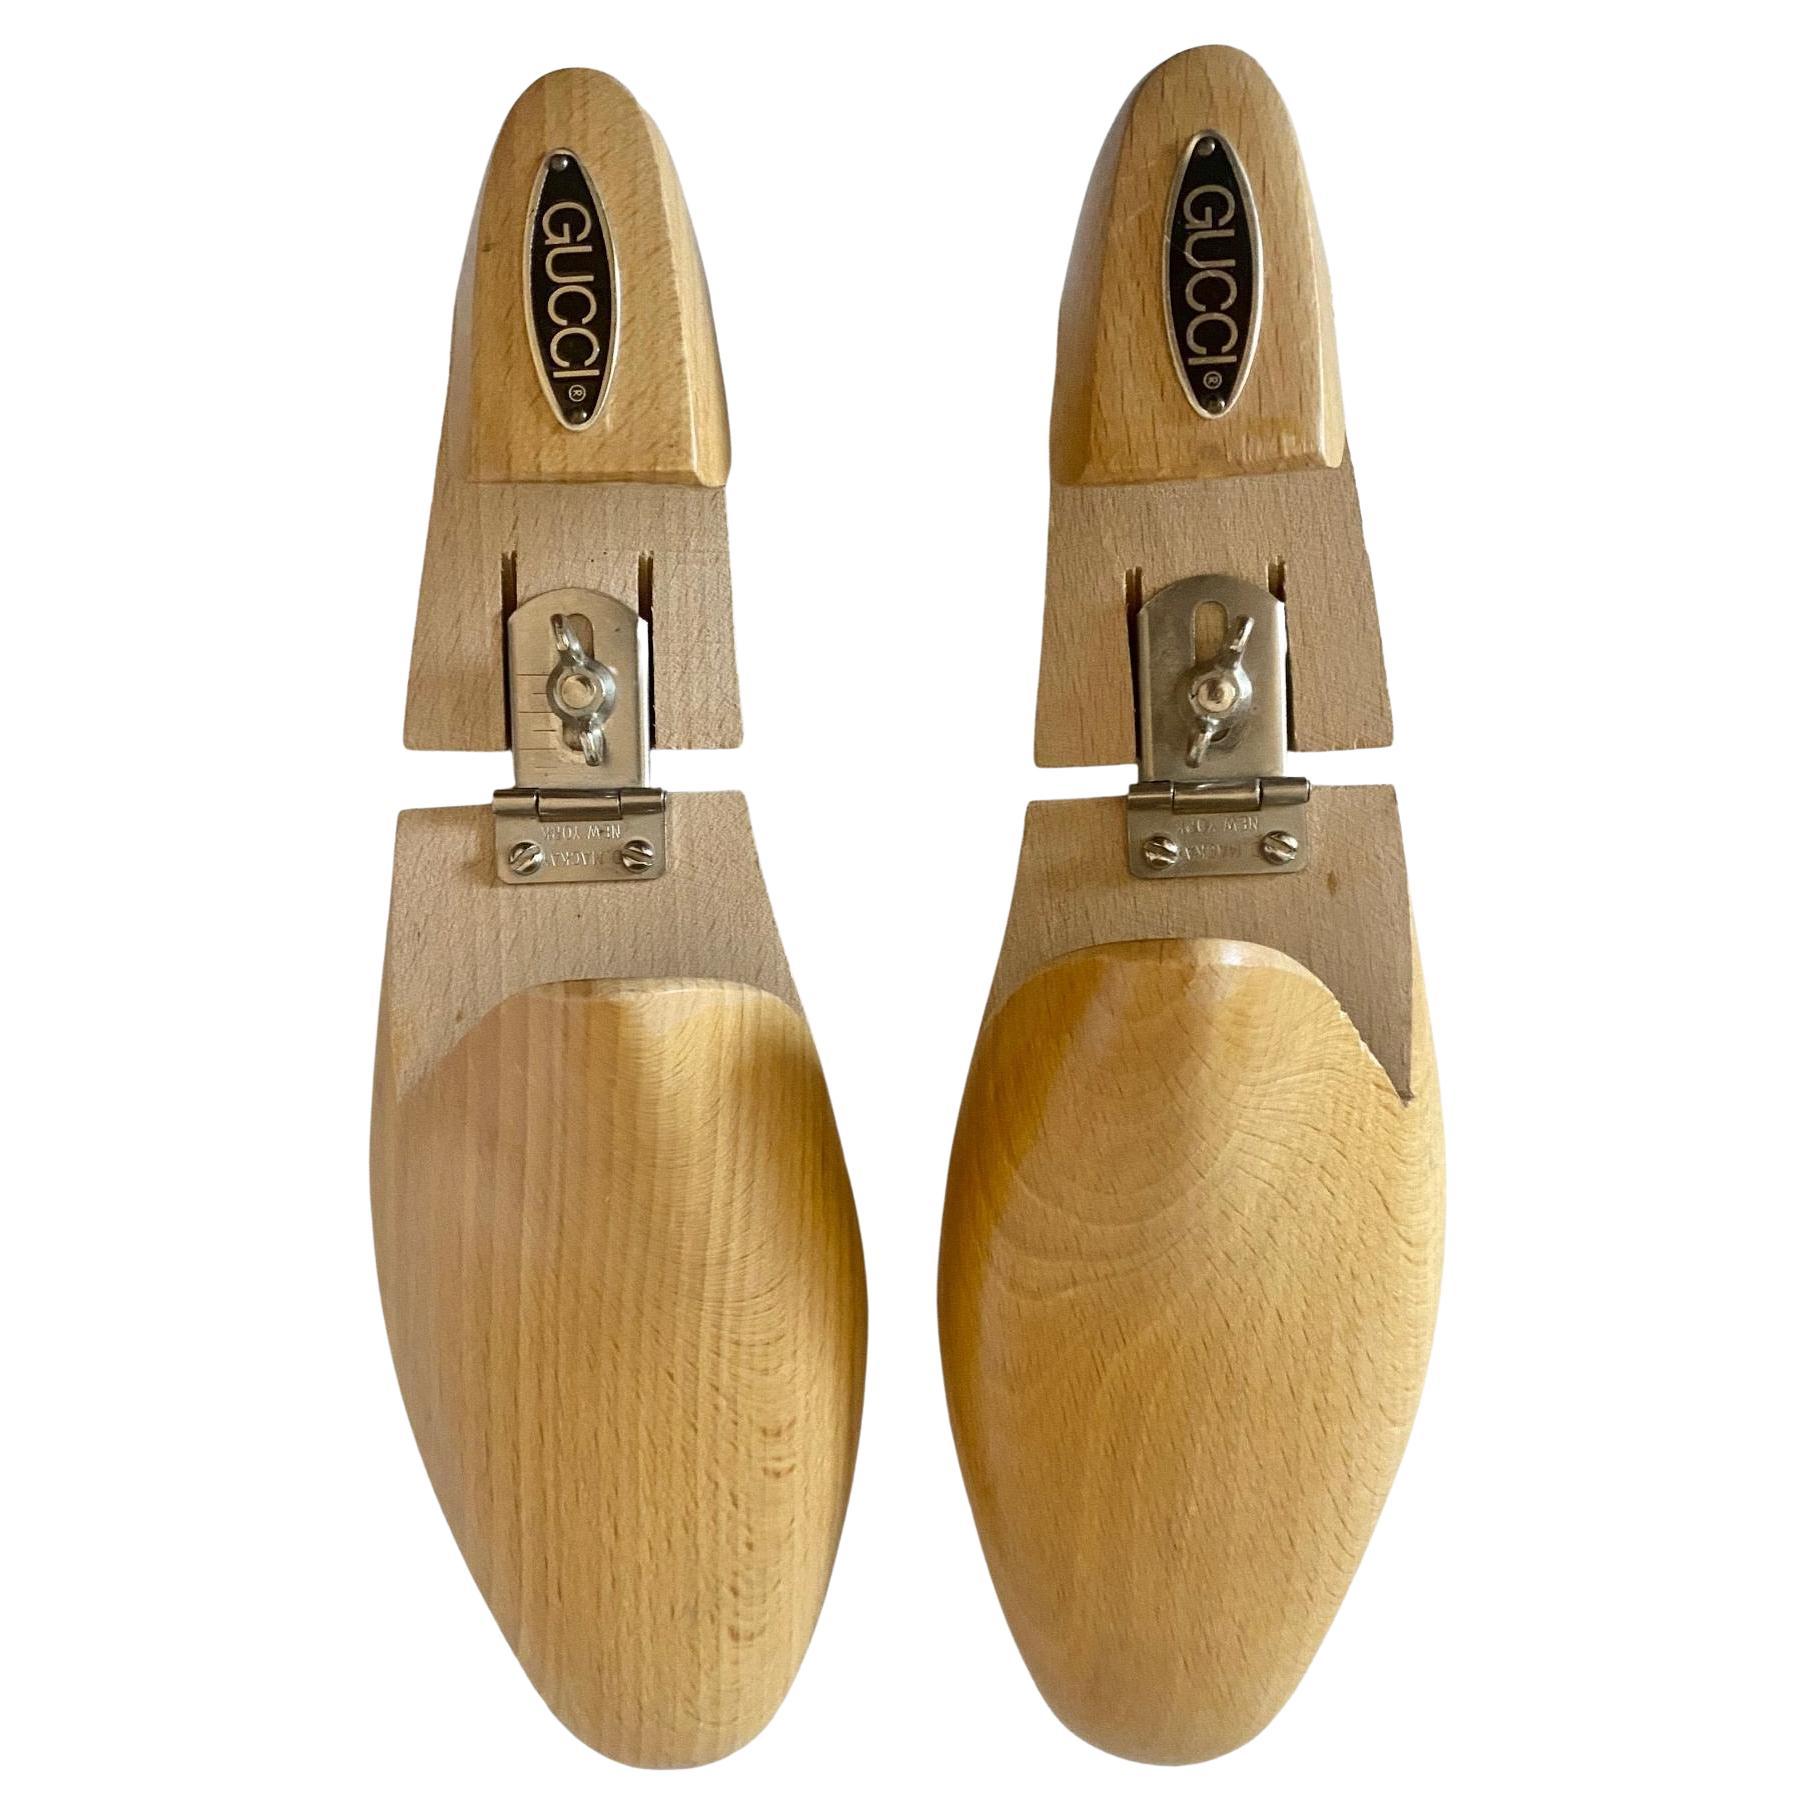 Diese exquisiten Gucci Schuhspanner aus Holz, die auf das New York der 1960er Jahre zurückgehen, besitzen eine ewige Raffinesse und eignen sich sowohl für den persönlichen Gebrauch als auch als dekoratives Element in der Wohnung.

Größe: 43 IT -